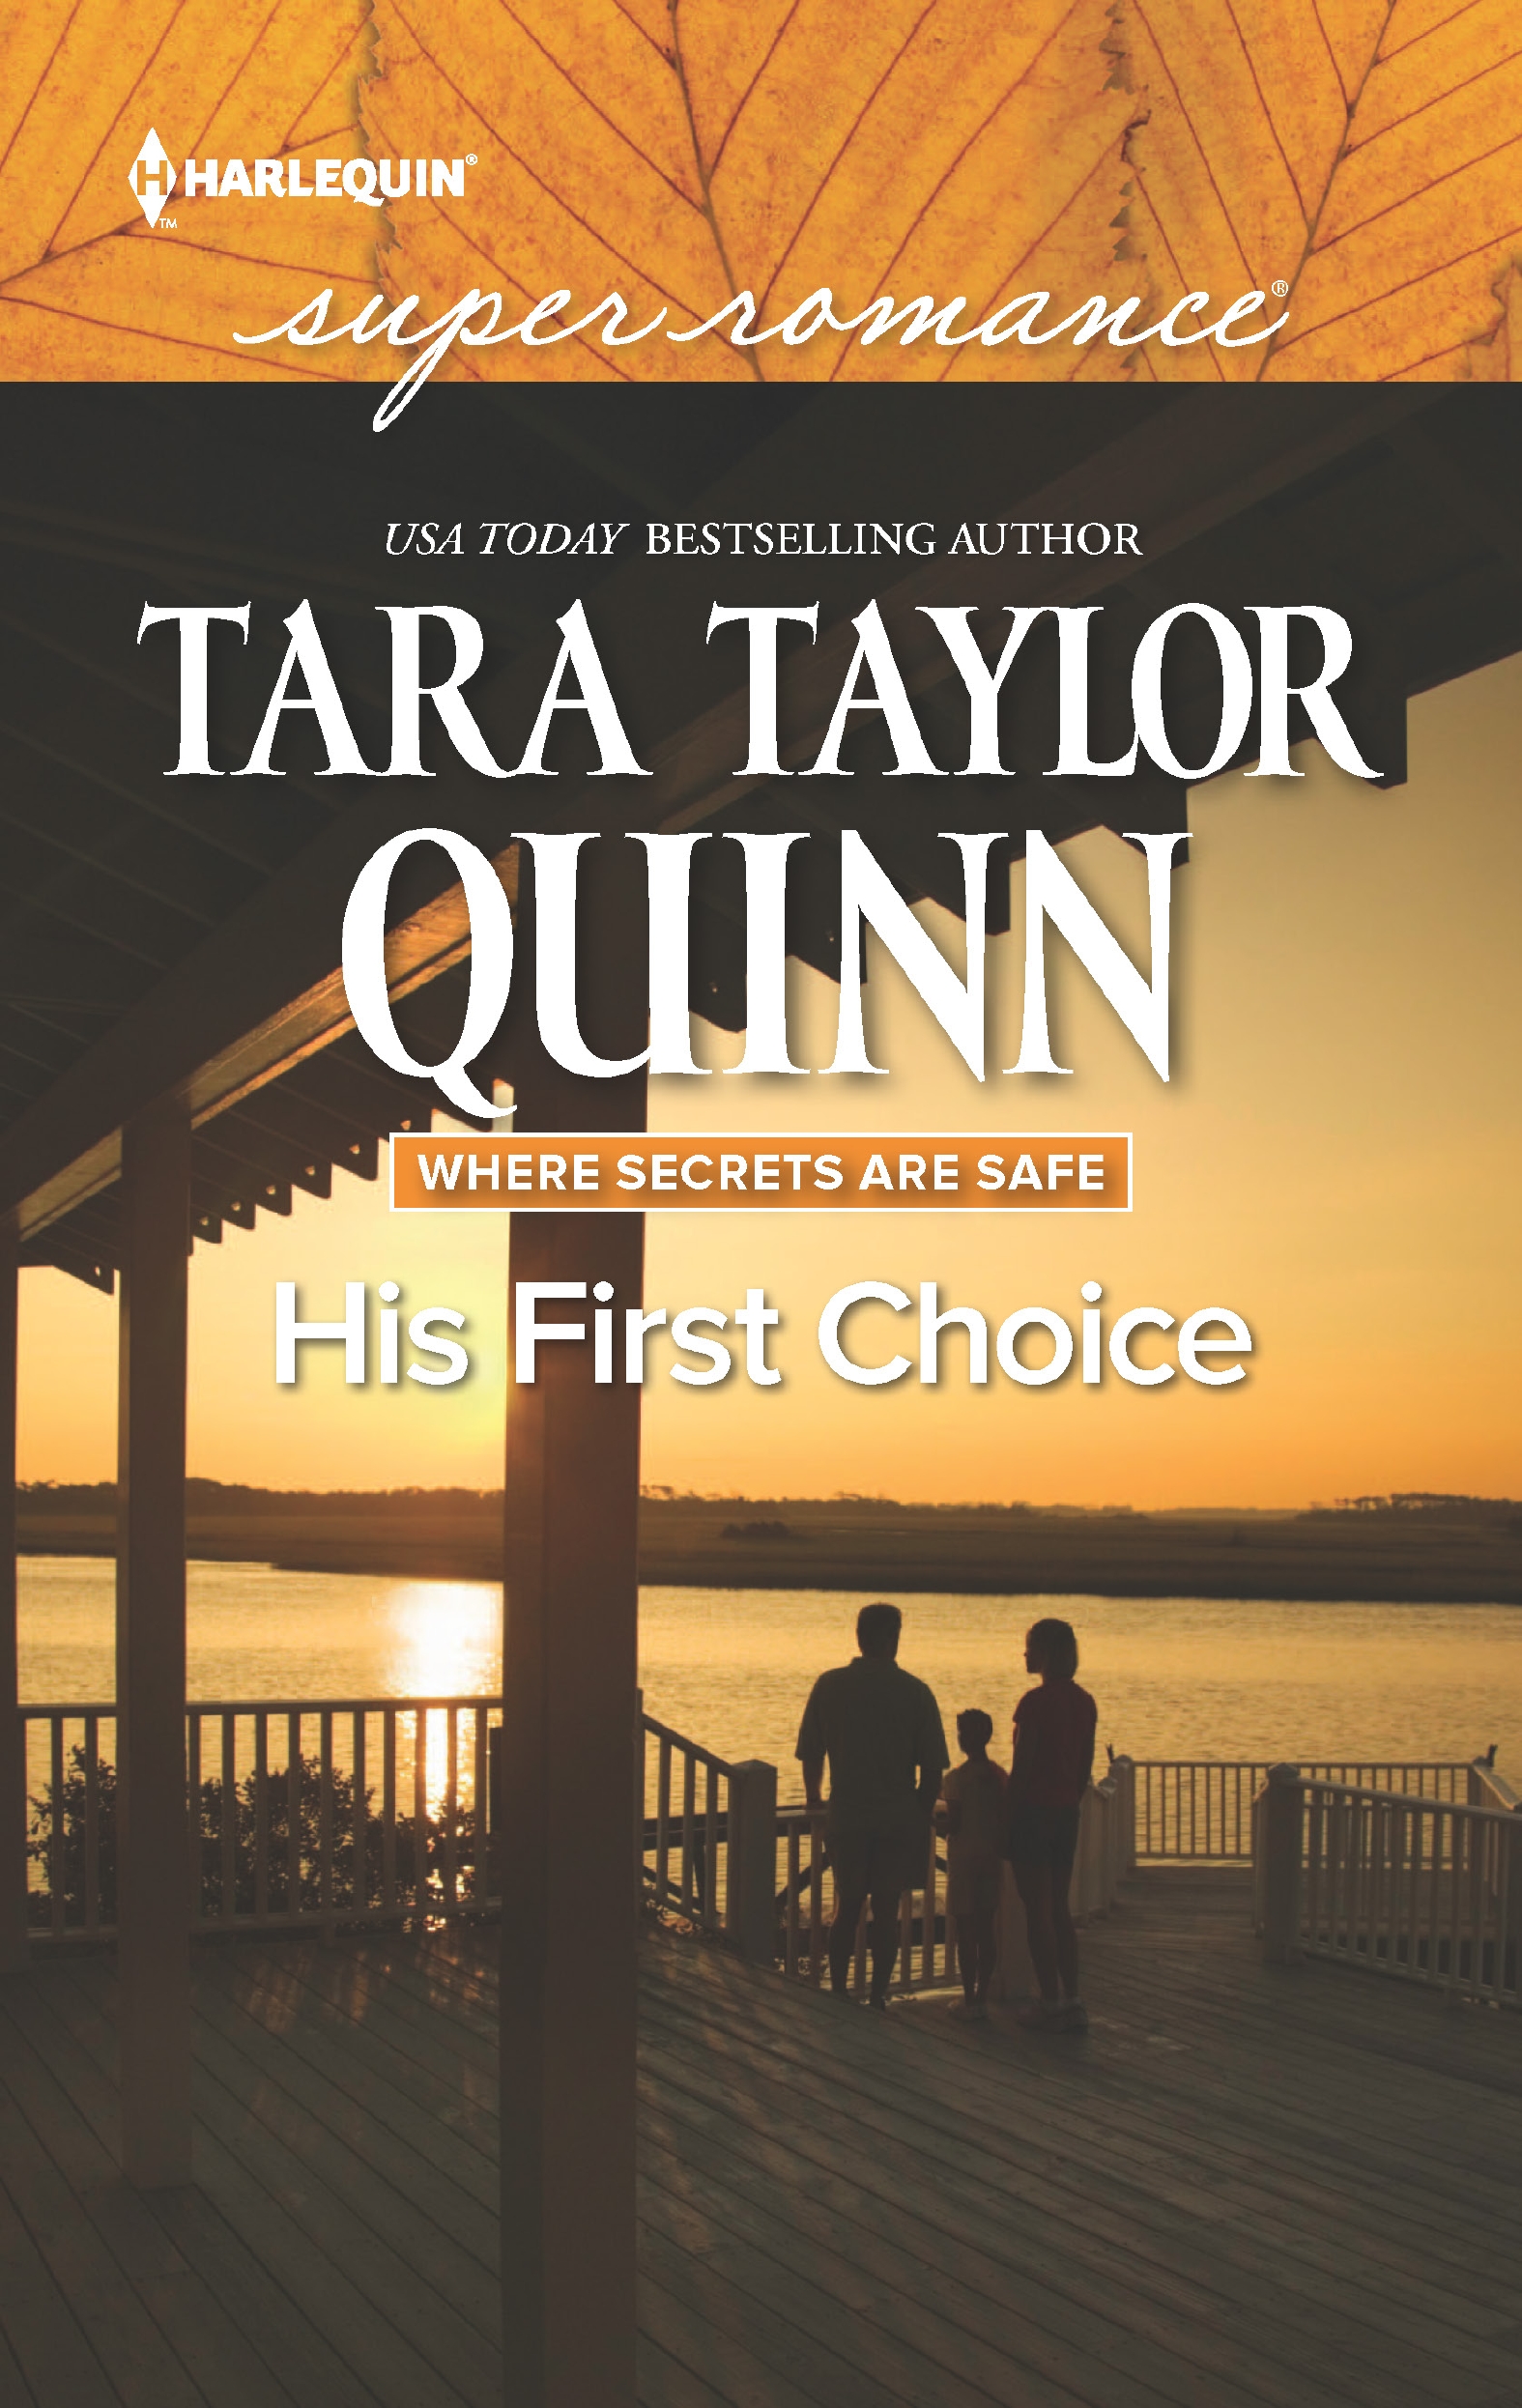 His First Choice (2016) by Tara Taylor Quinn